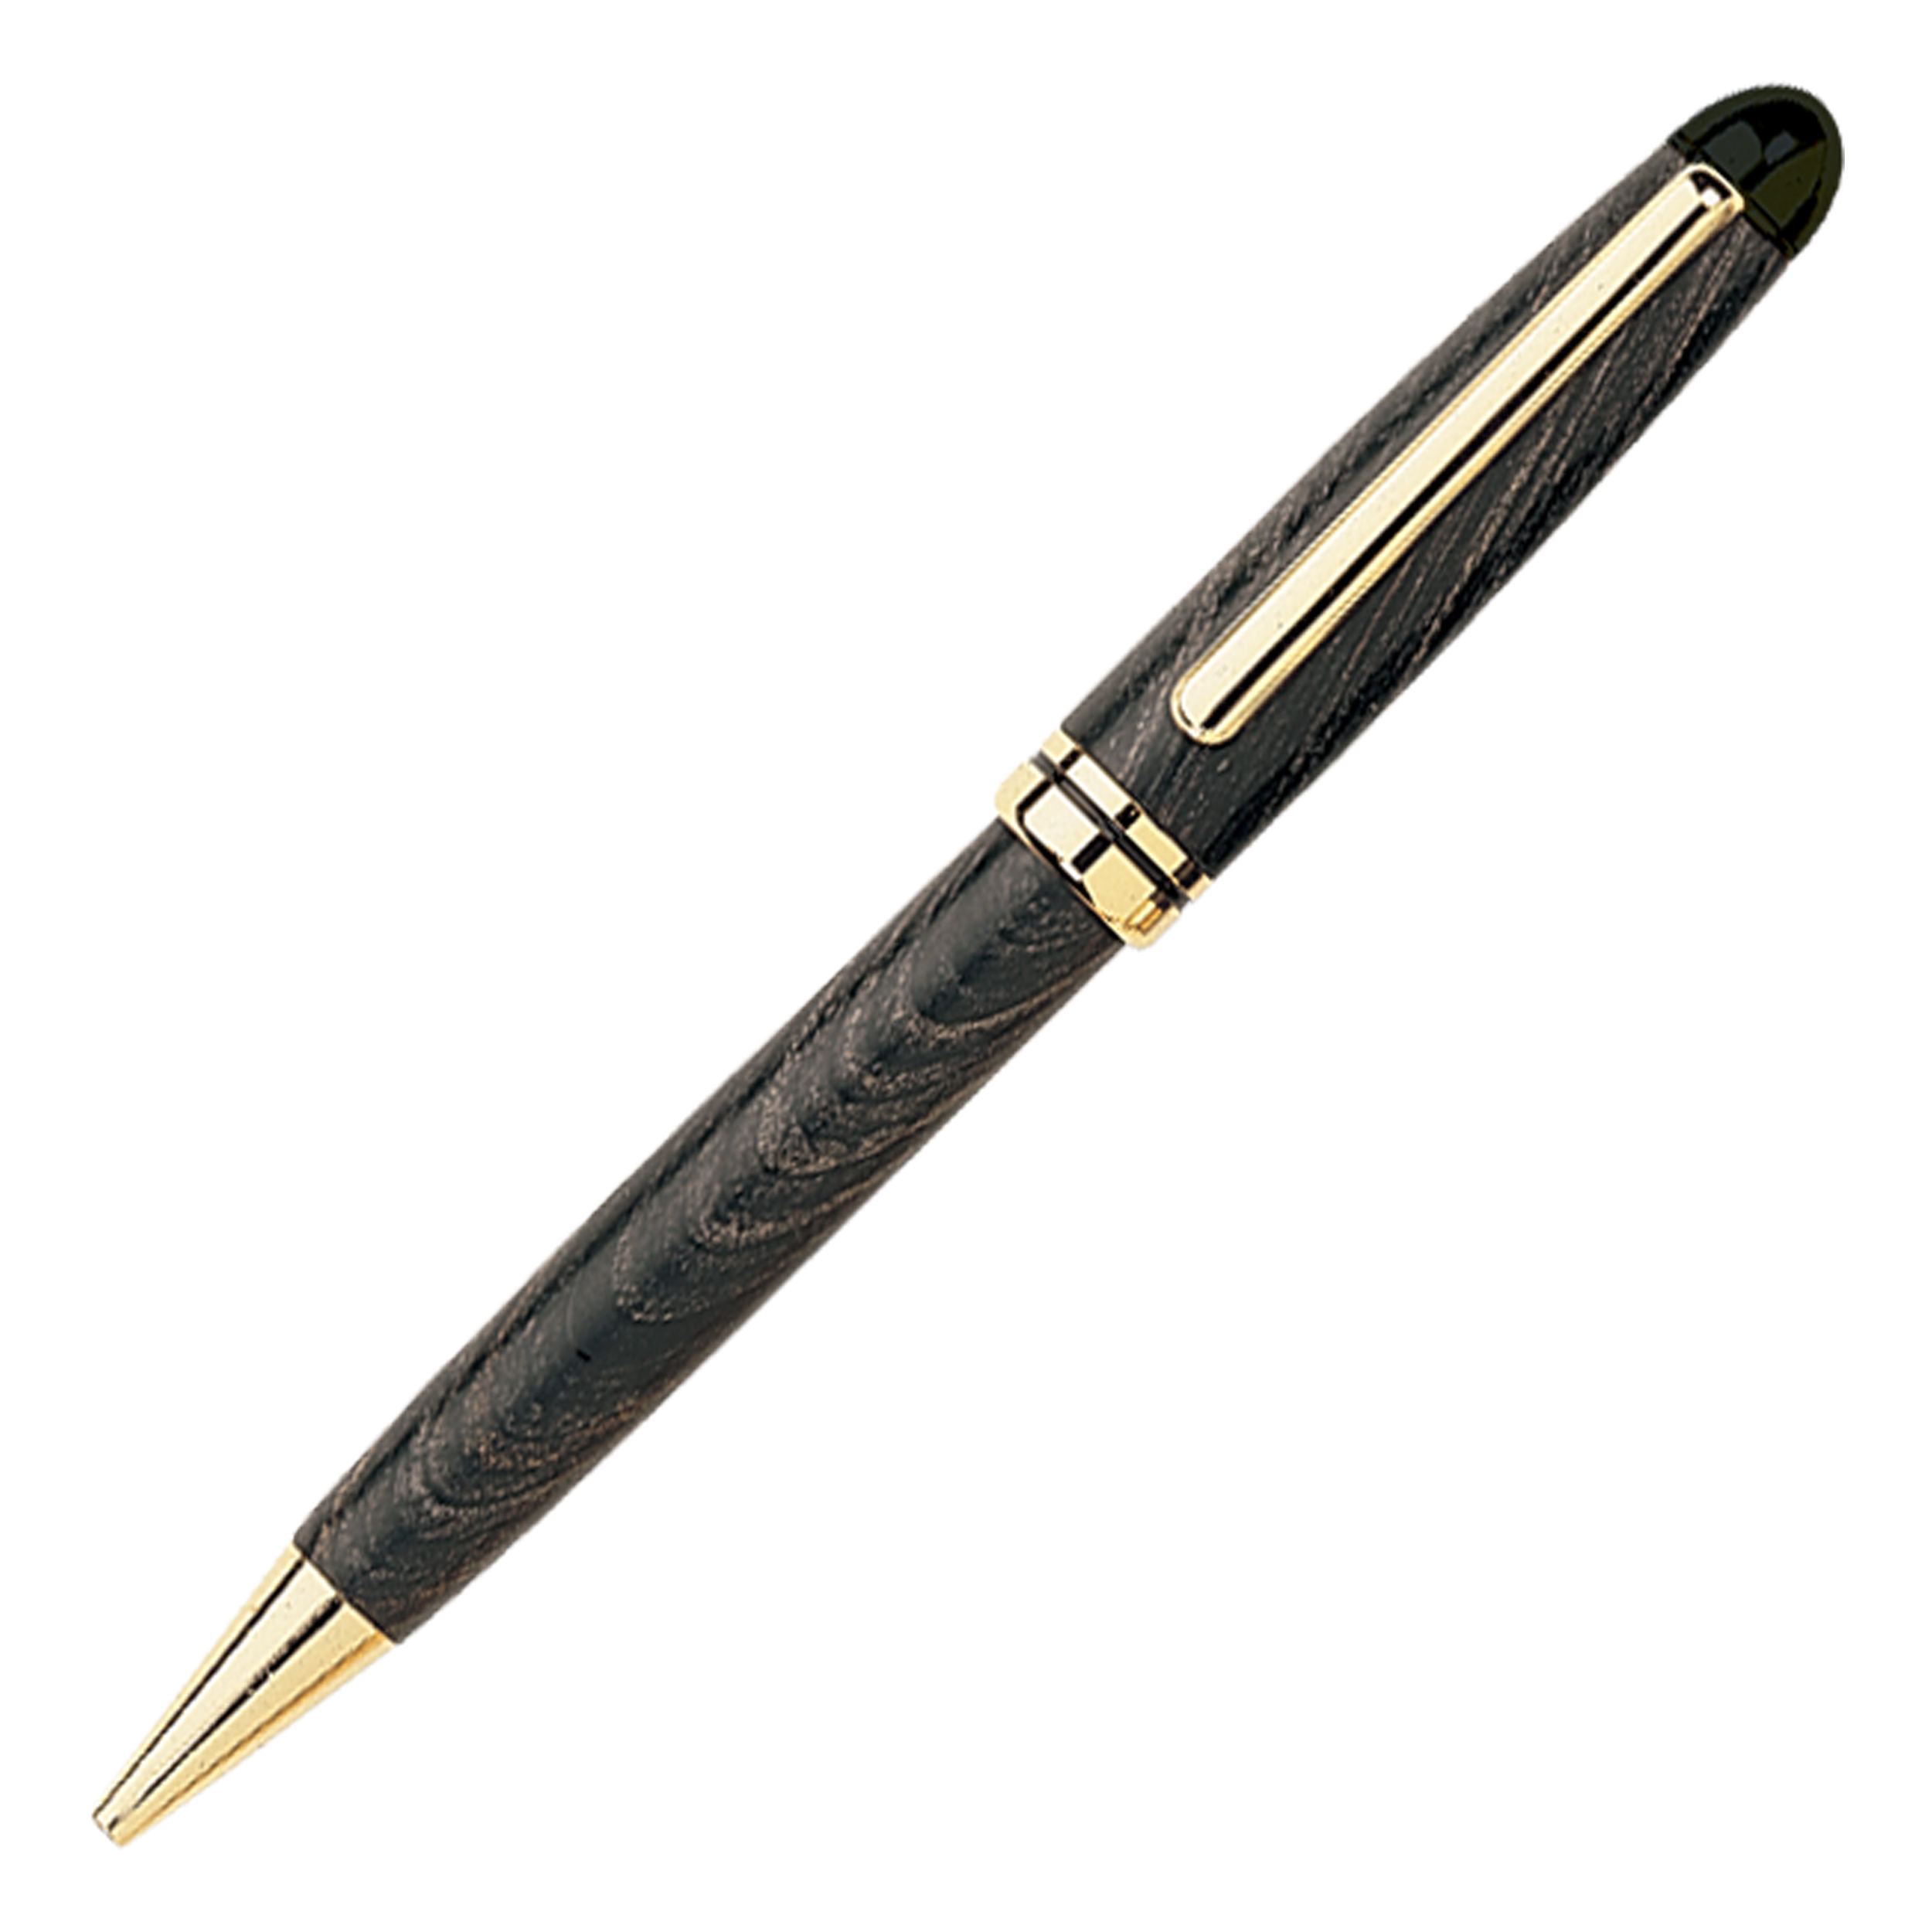 European Style Ballpoint Pen Kit - Standard Gold